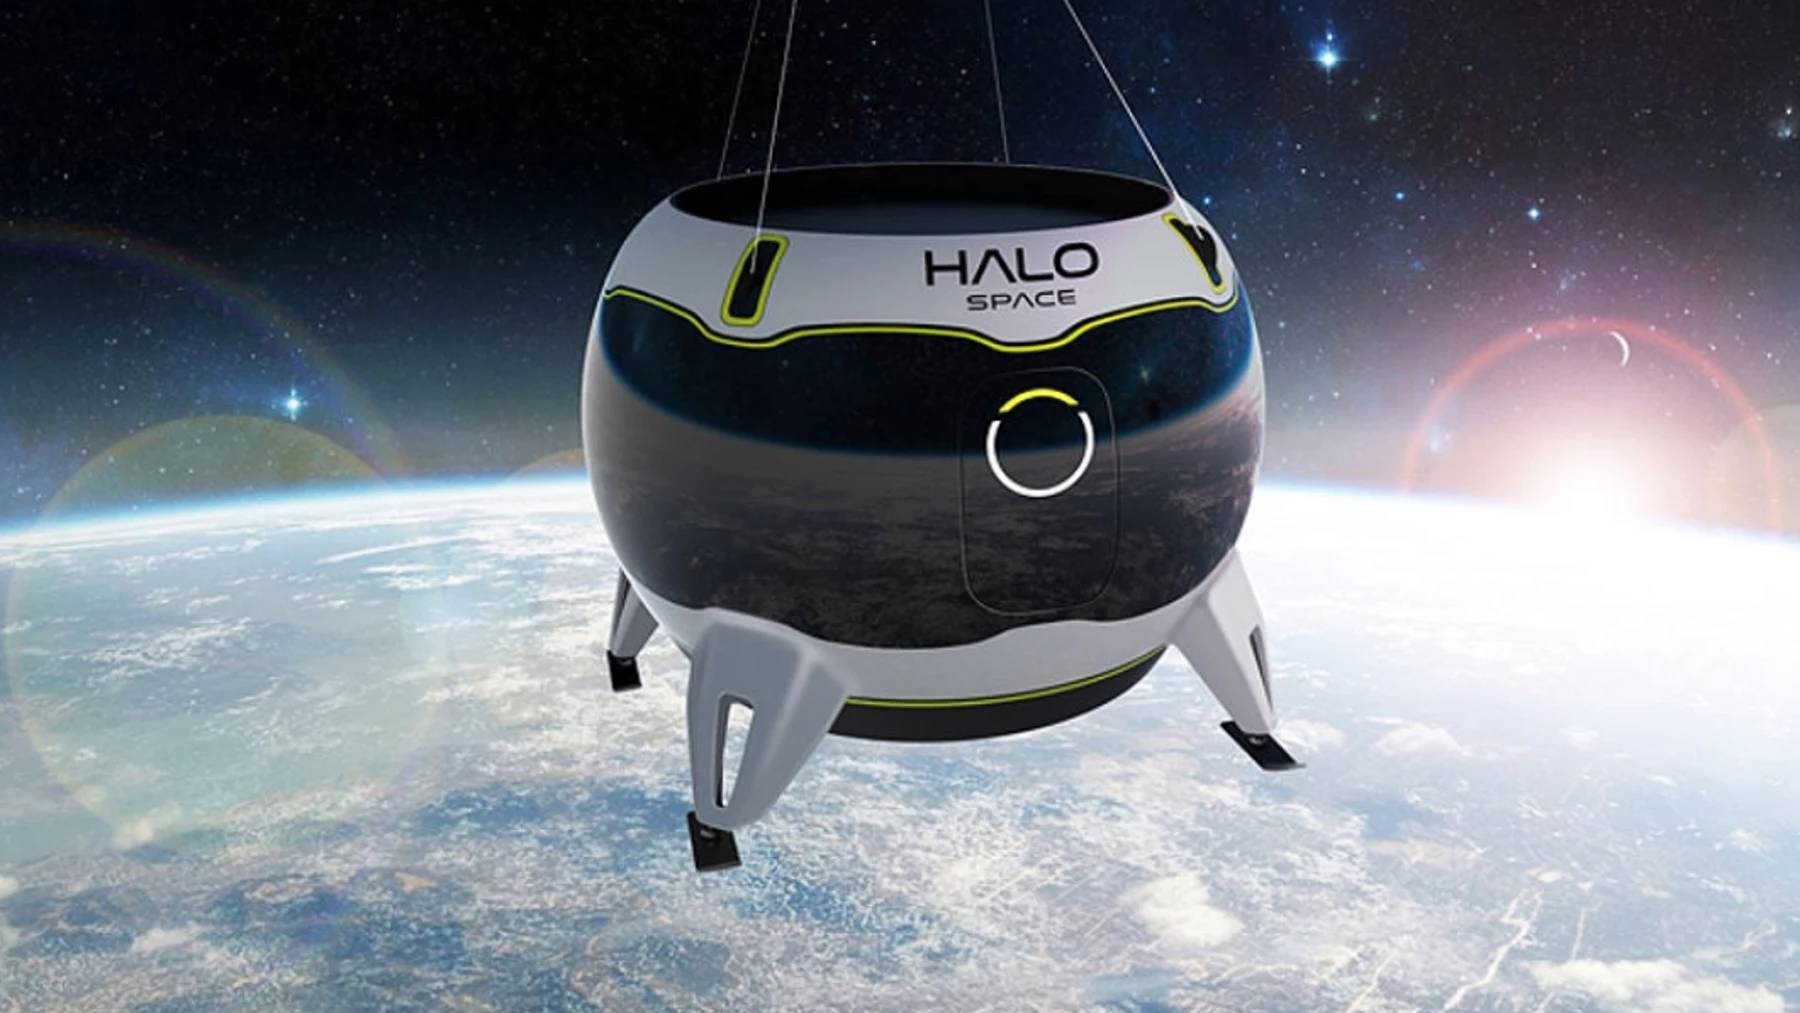 Imagen de Halo Space, rival de Eos-X Space creada por Arthur D. Little.